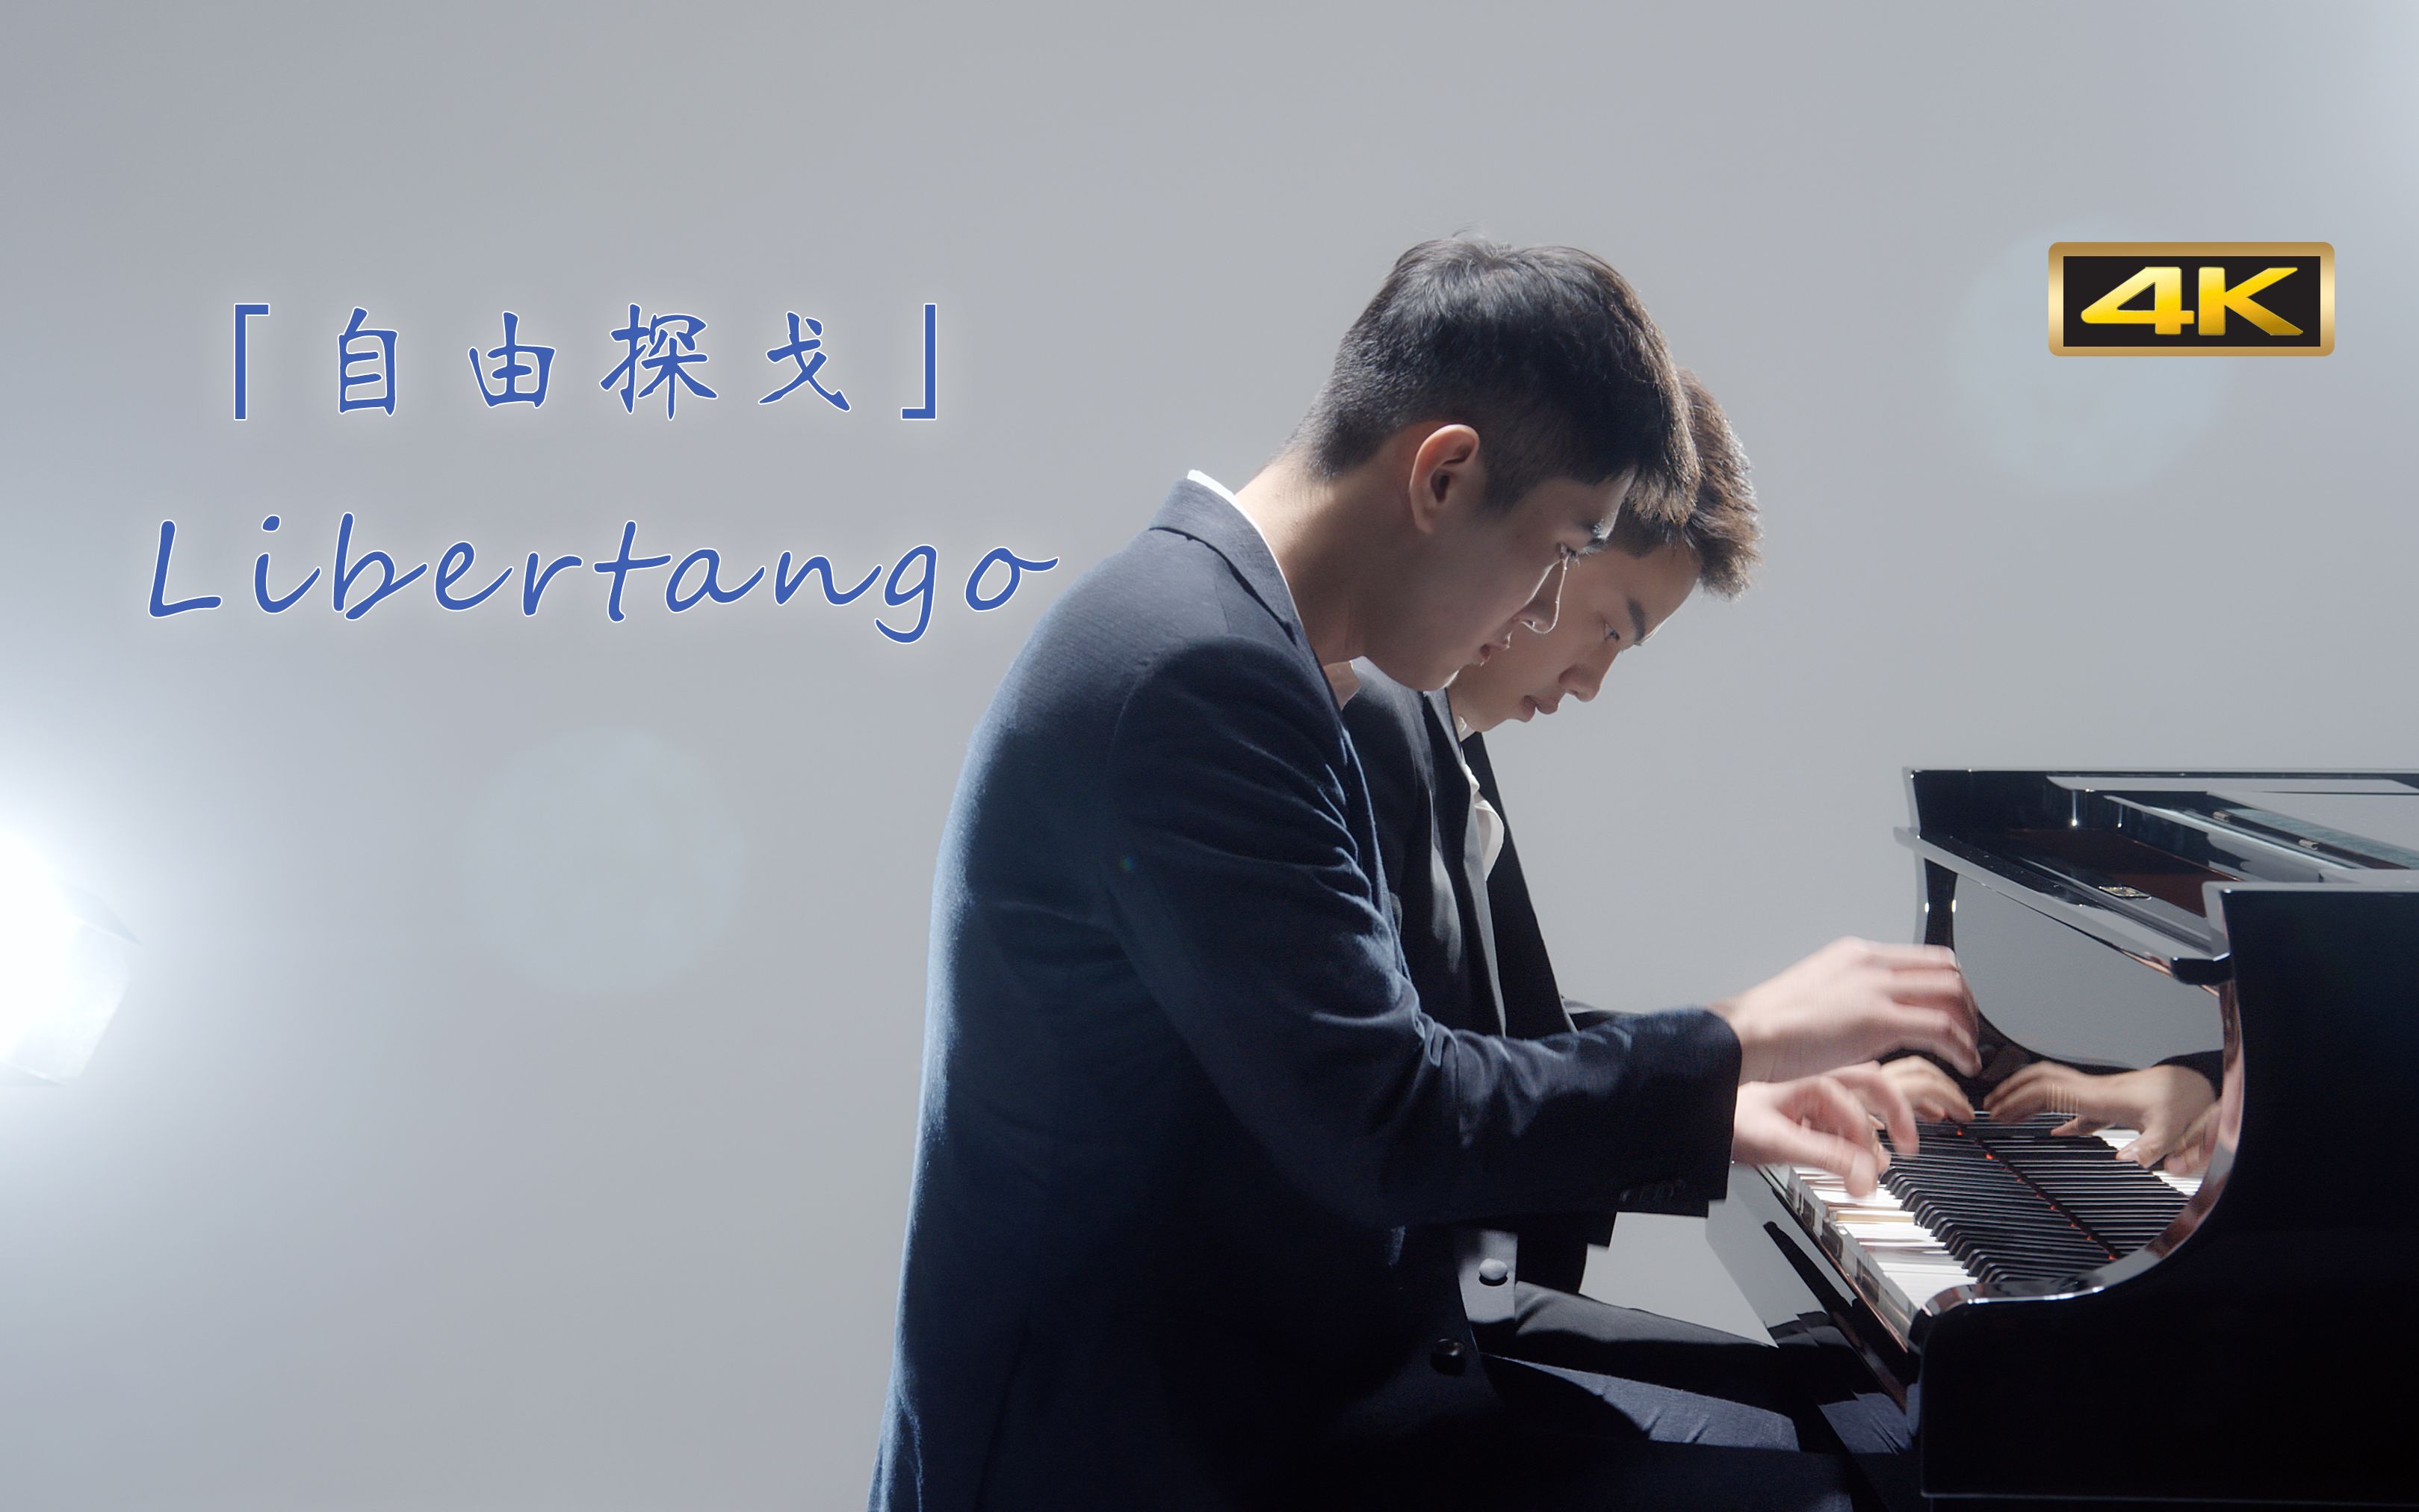 【钢琴】四手联弹 皮亚佐拉「自由探戈Libertango」迅疾的手速加热情沸腾的节奏